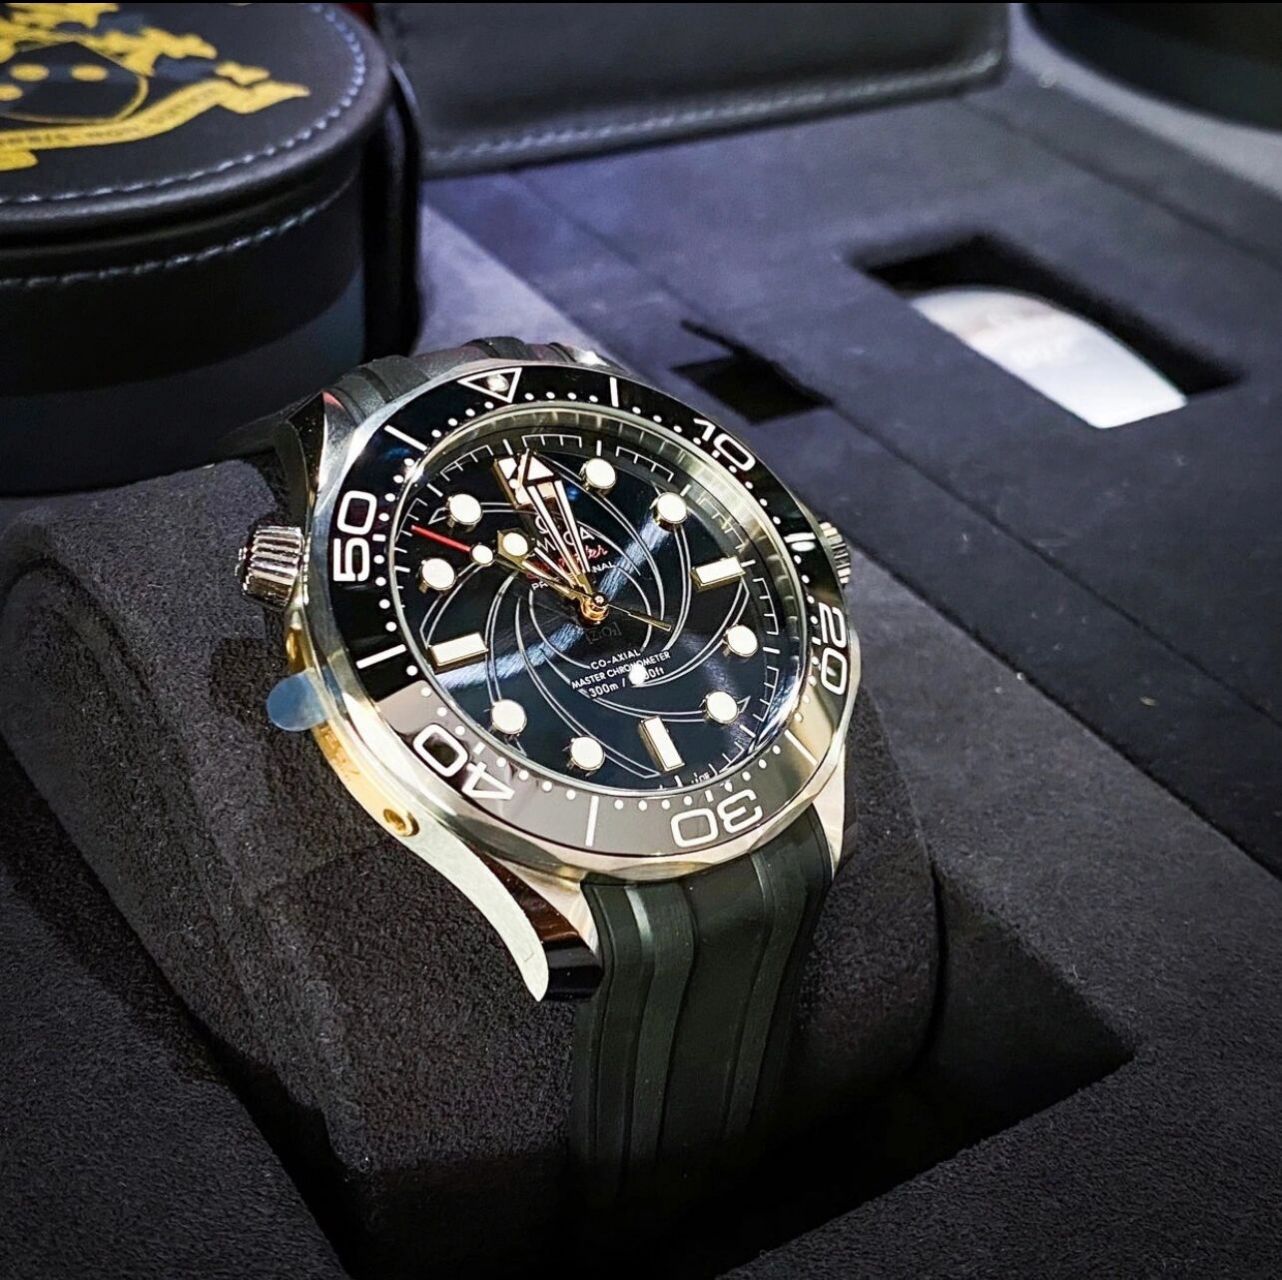 欧米茄007詹姆斯·邦德限量版套装 omega珍藏两枚腕表,表盒设计采用